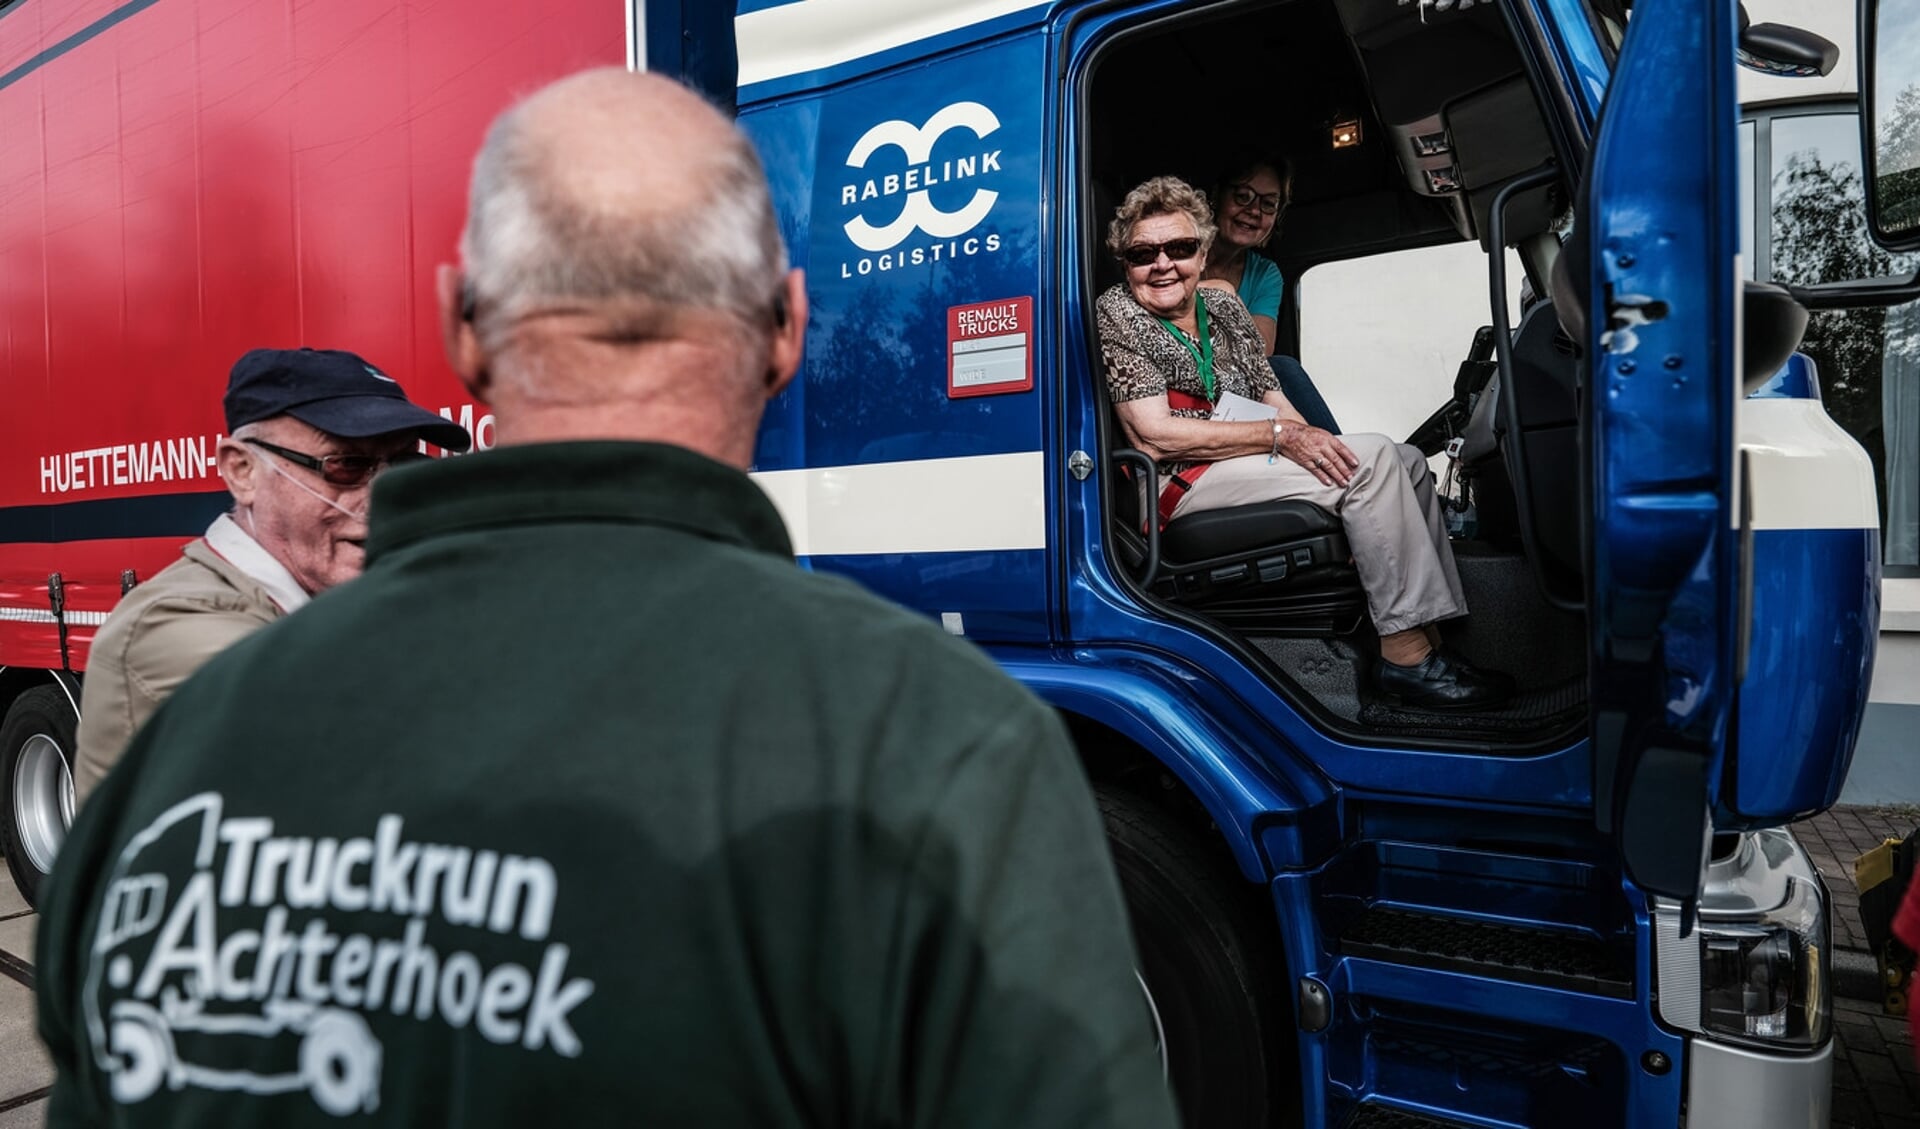 Een eerdere editie van de Truckrun Achterhoek. Foto: Miets Rabelink